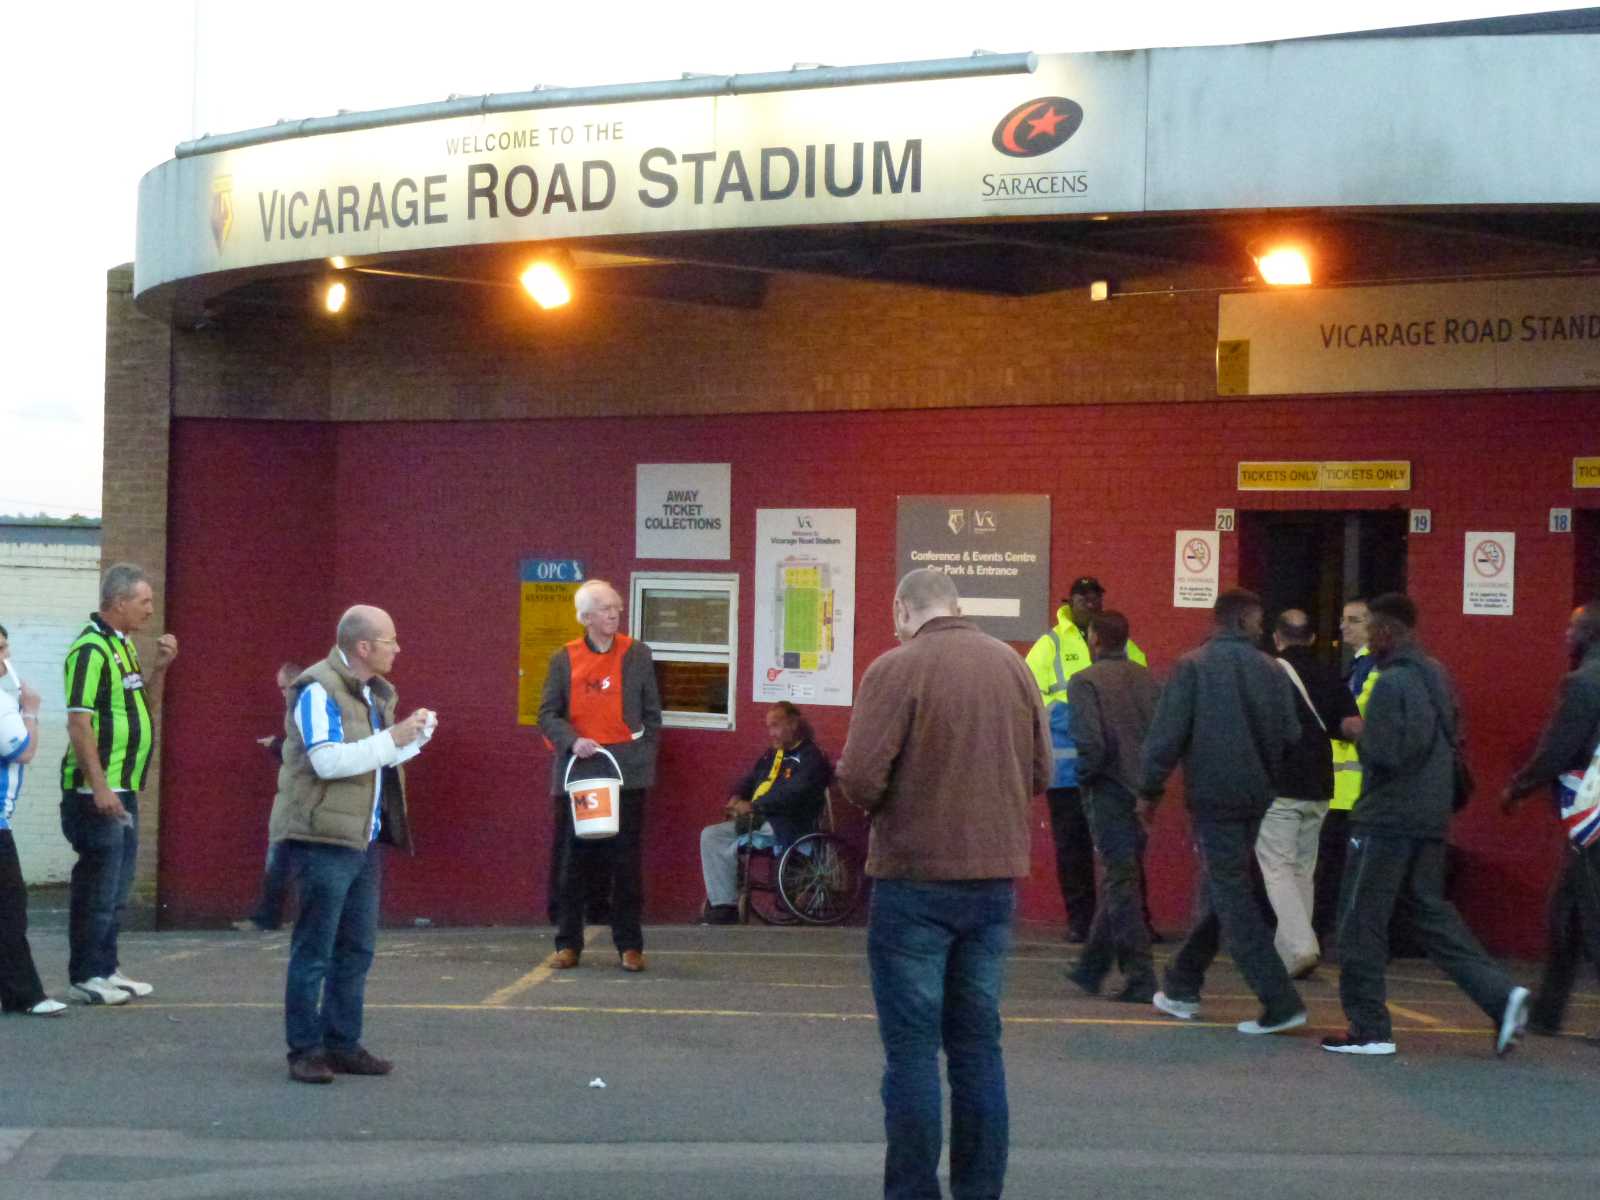 Watford Game 18 September 2012